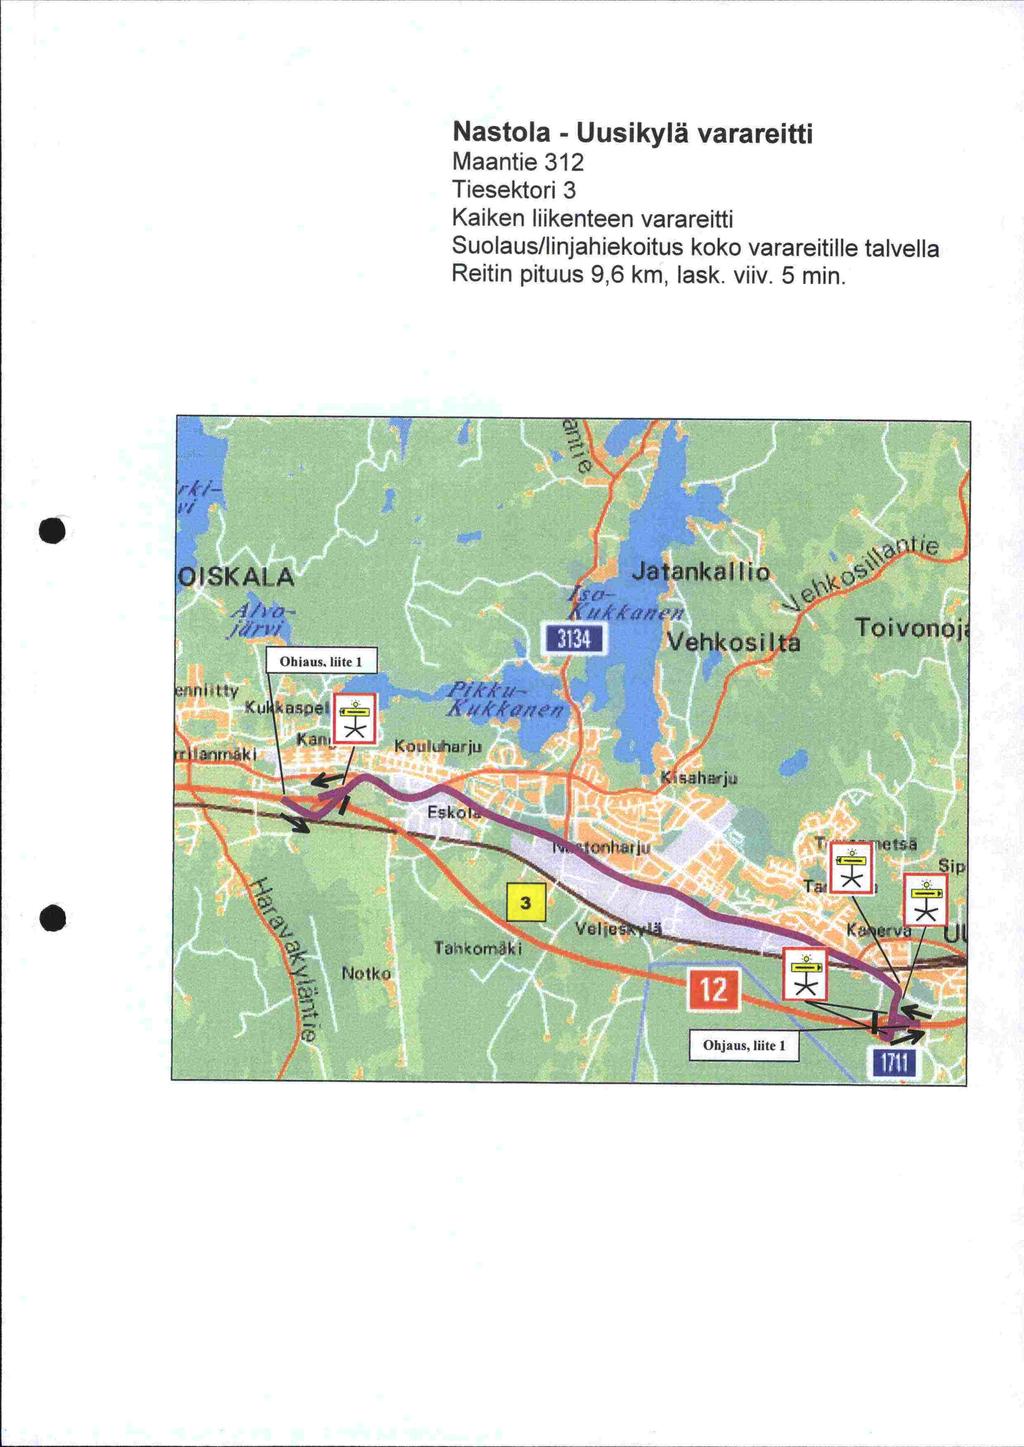 Nastola Uusikylä Maantie 312 Tiesektori 3 Kaiken liikenteen Suolaus/linjahiekoitus koko varareitille talvella Reitin pituus 9,6 km, task viiv 5 min